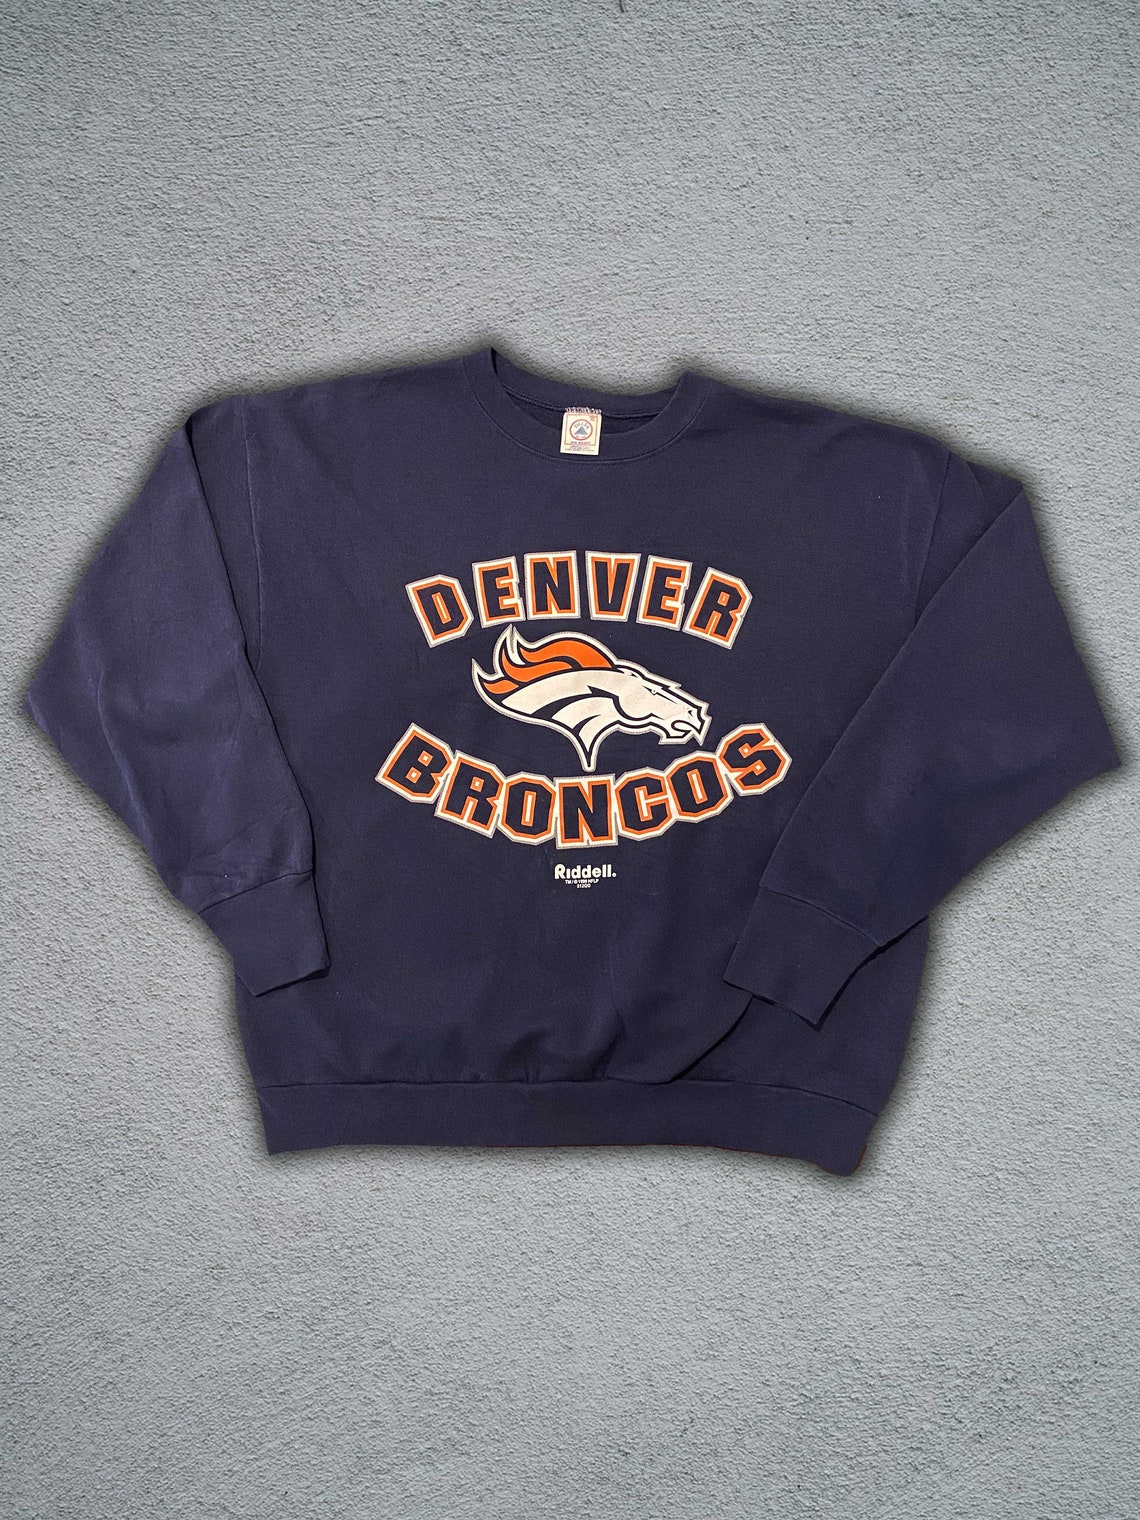 Vintage 1999 NFL Denver Broncos Crewneck Size XL Fits Mens | Etsy